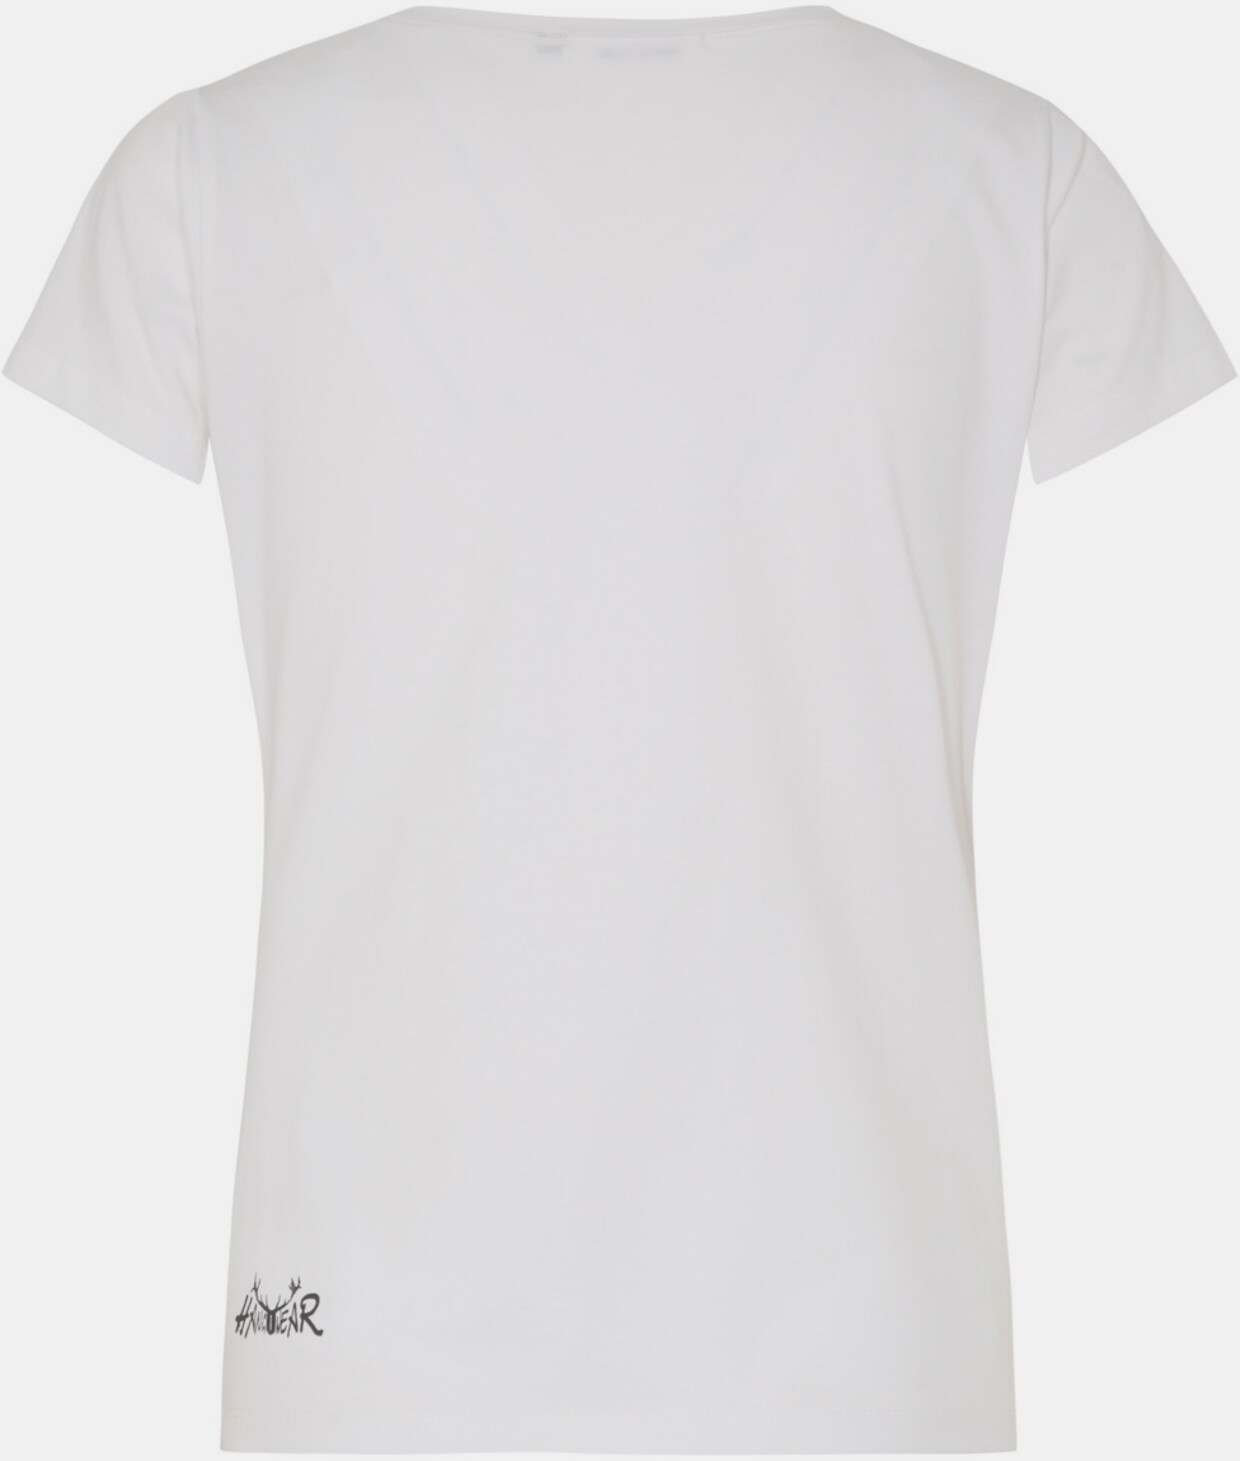 Hangowear Trachtenshirt - weiß